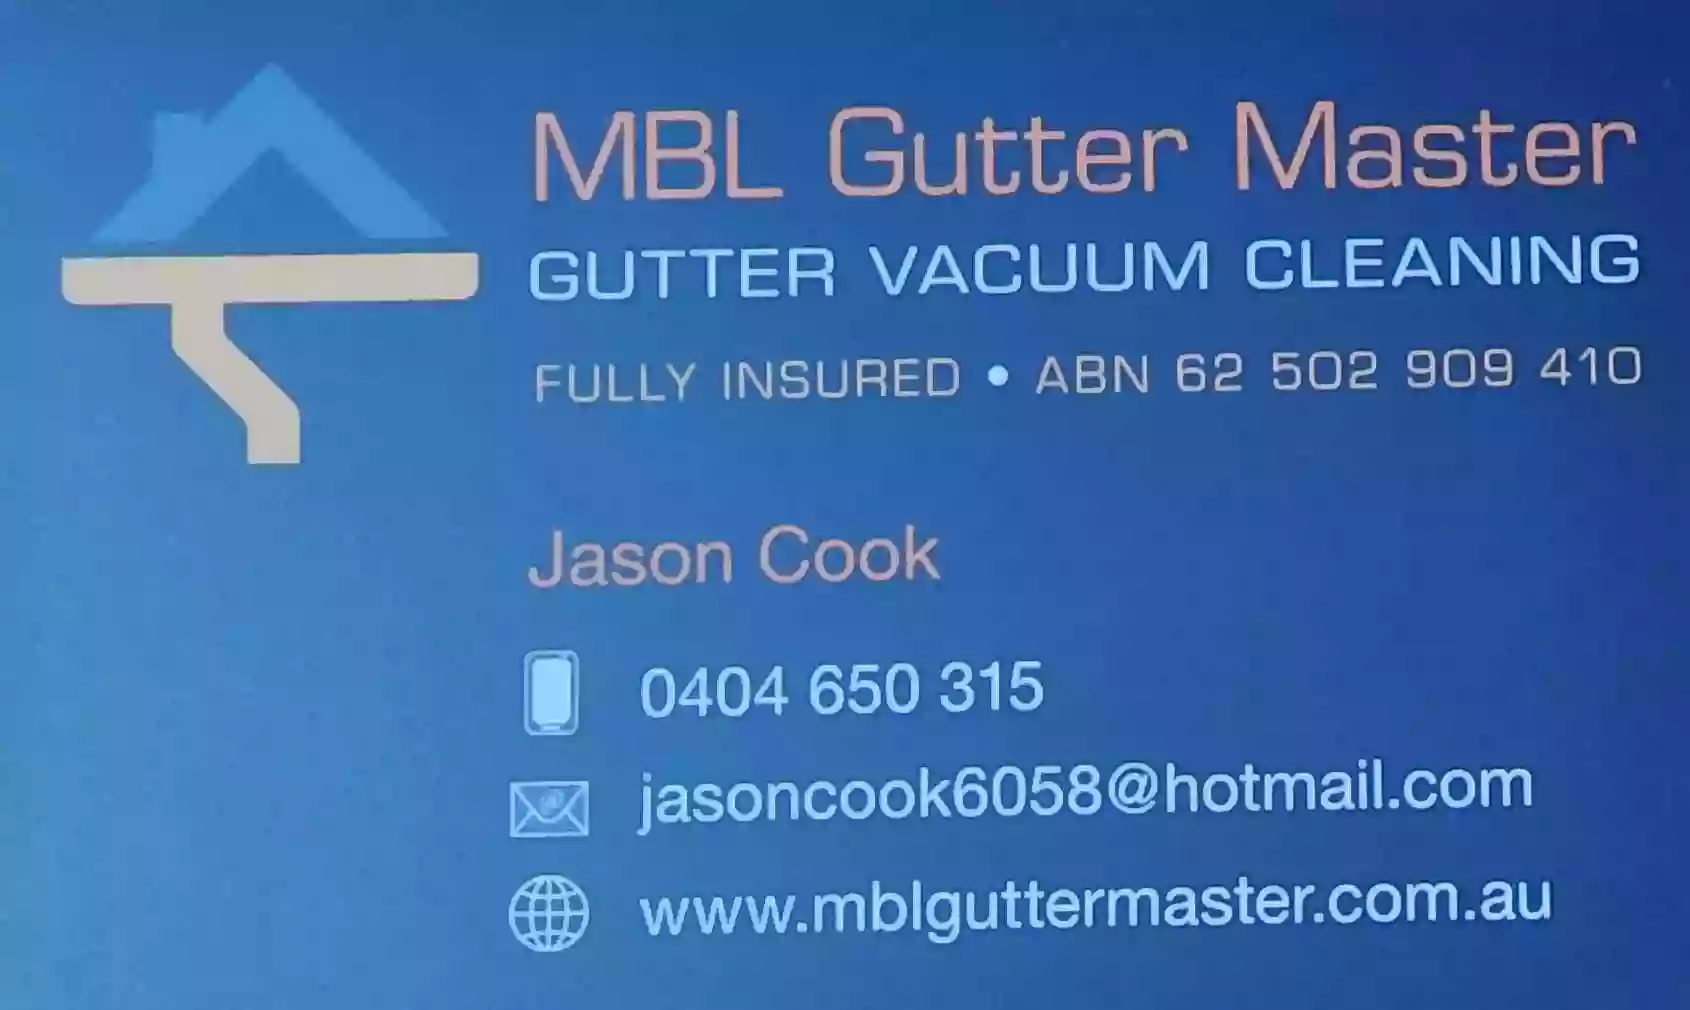 MBL Gutter Master